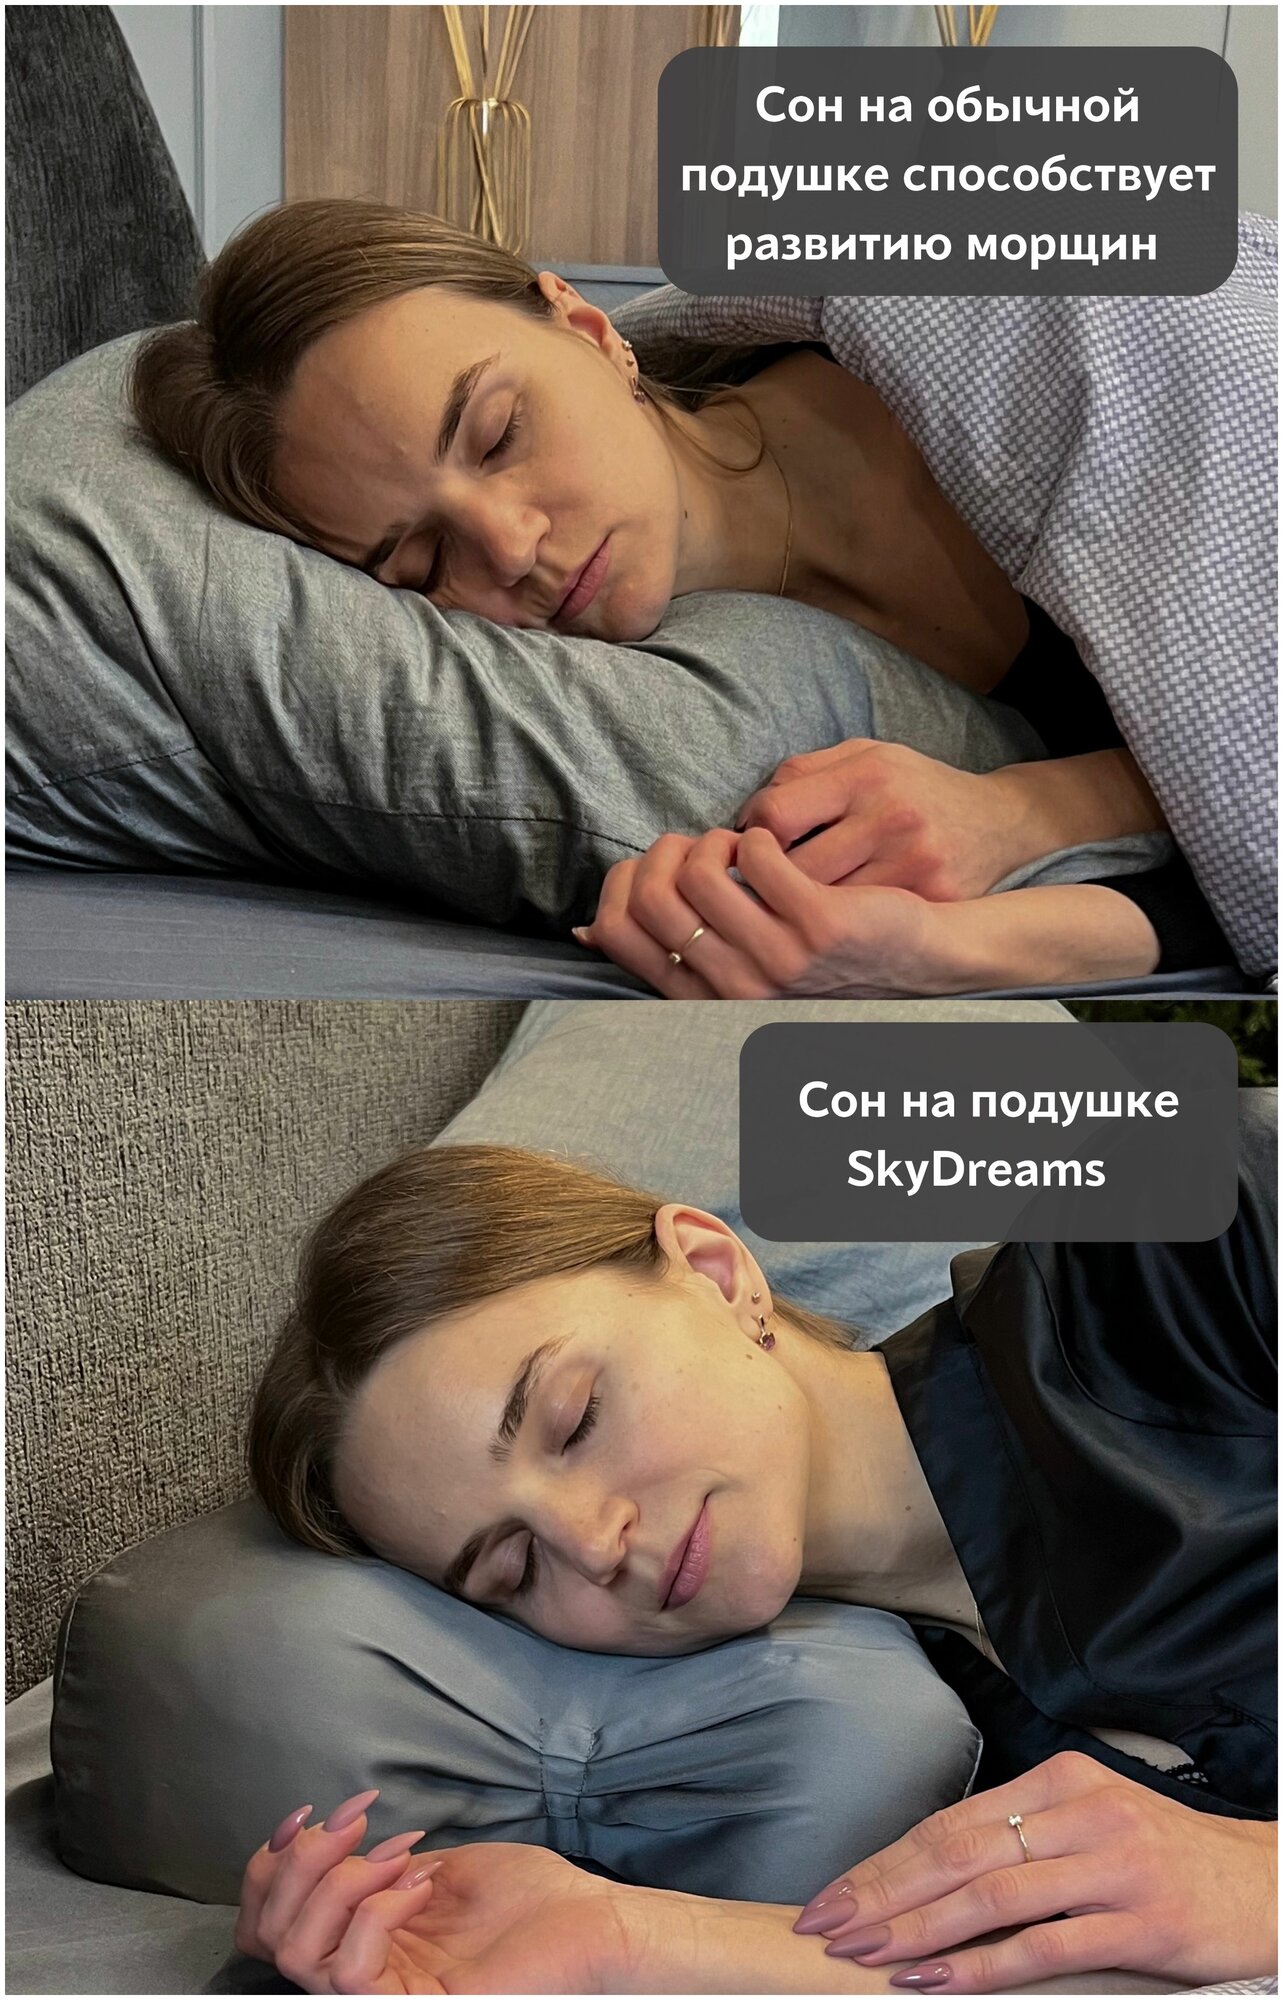 SkyDreams Анатомическая бьюти подушка от морщин сна, высота 10 см, цвет серый - фотография № 2